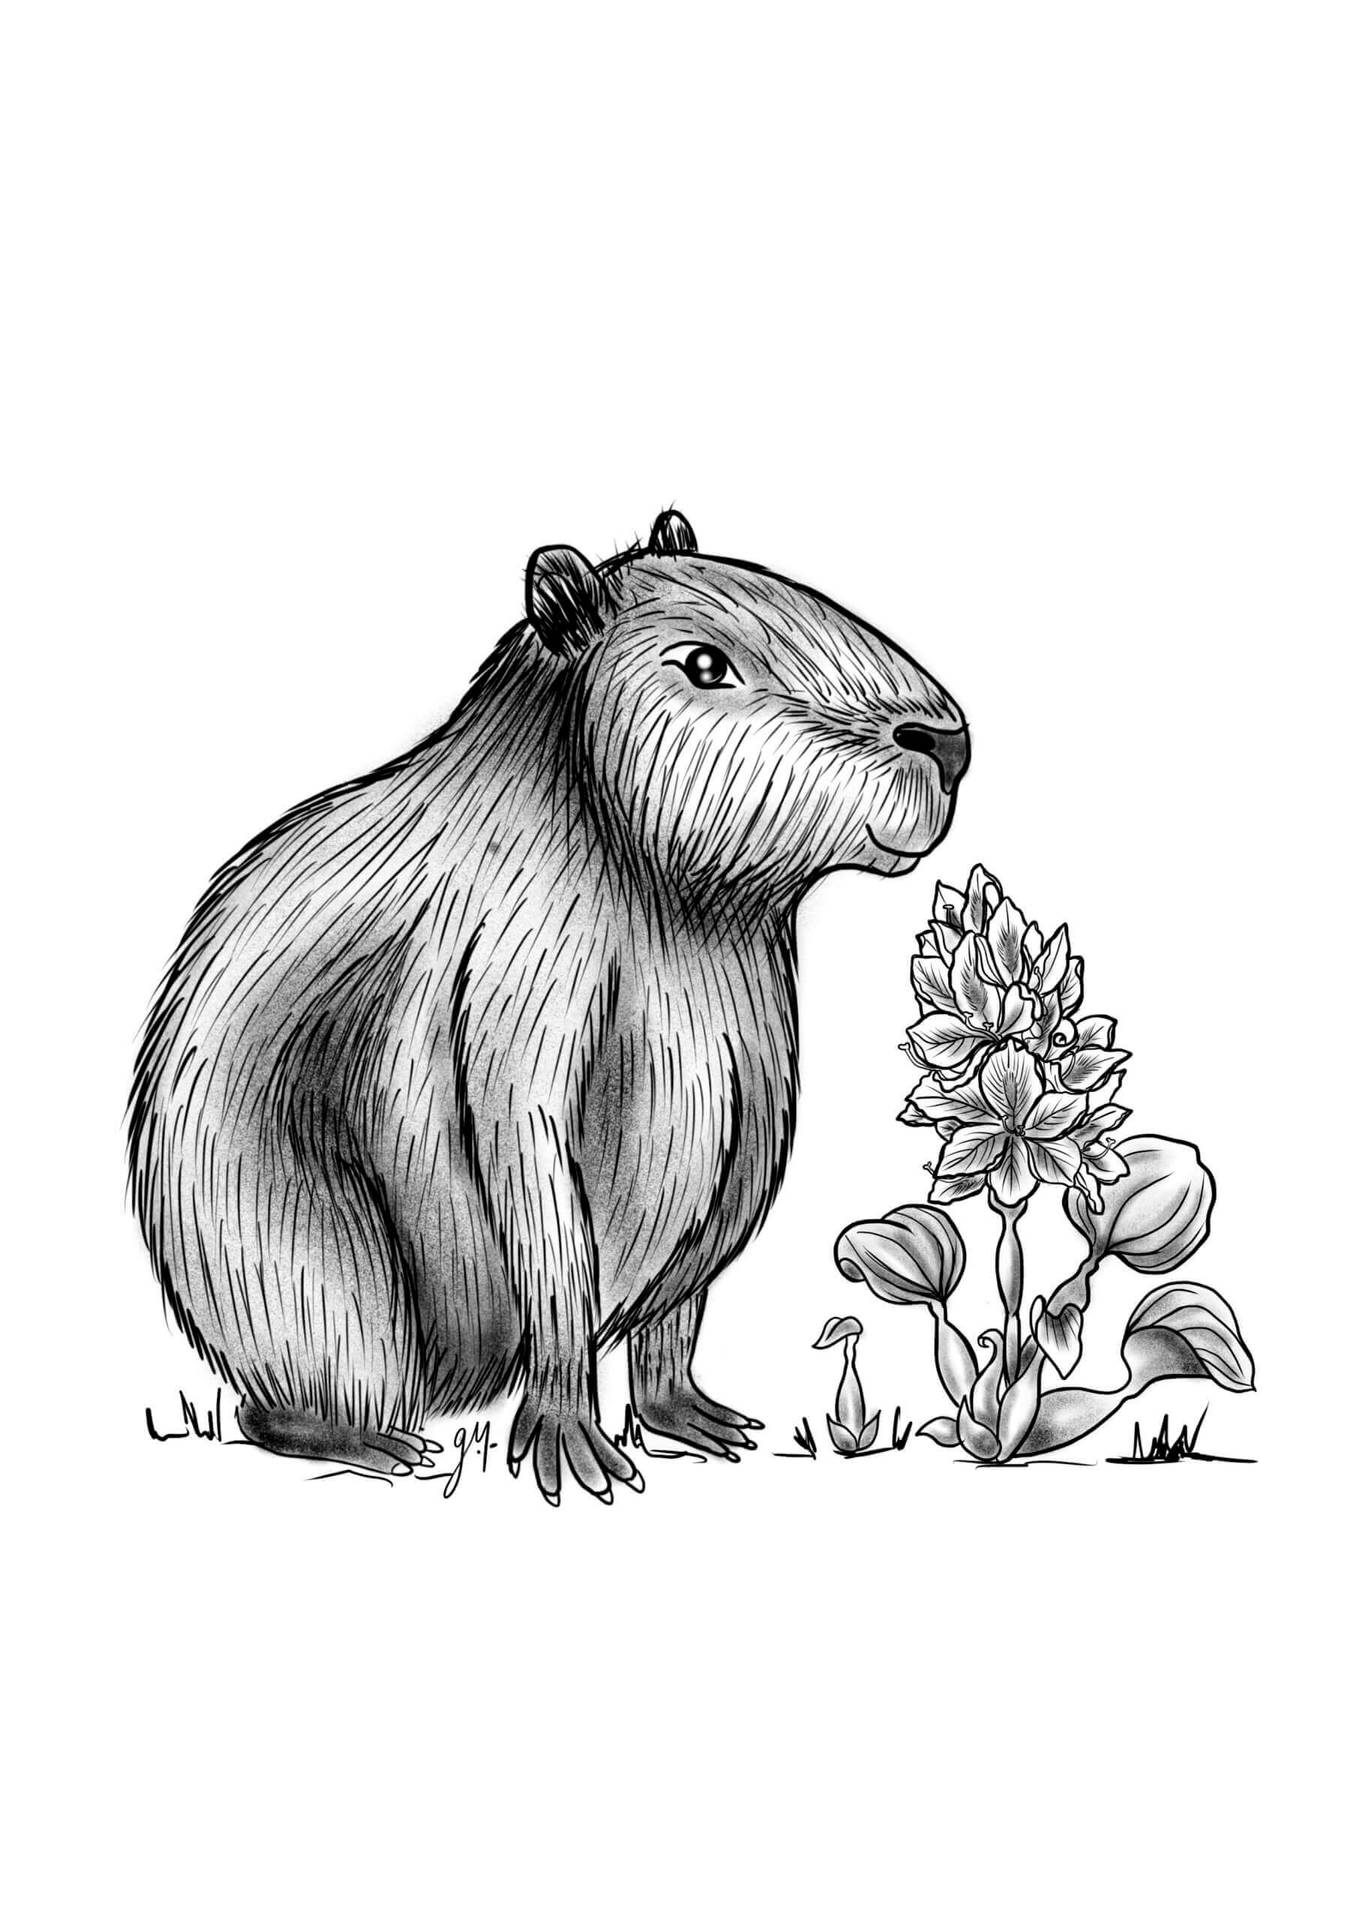 Artistic Capybara Ink Drawing